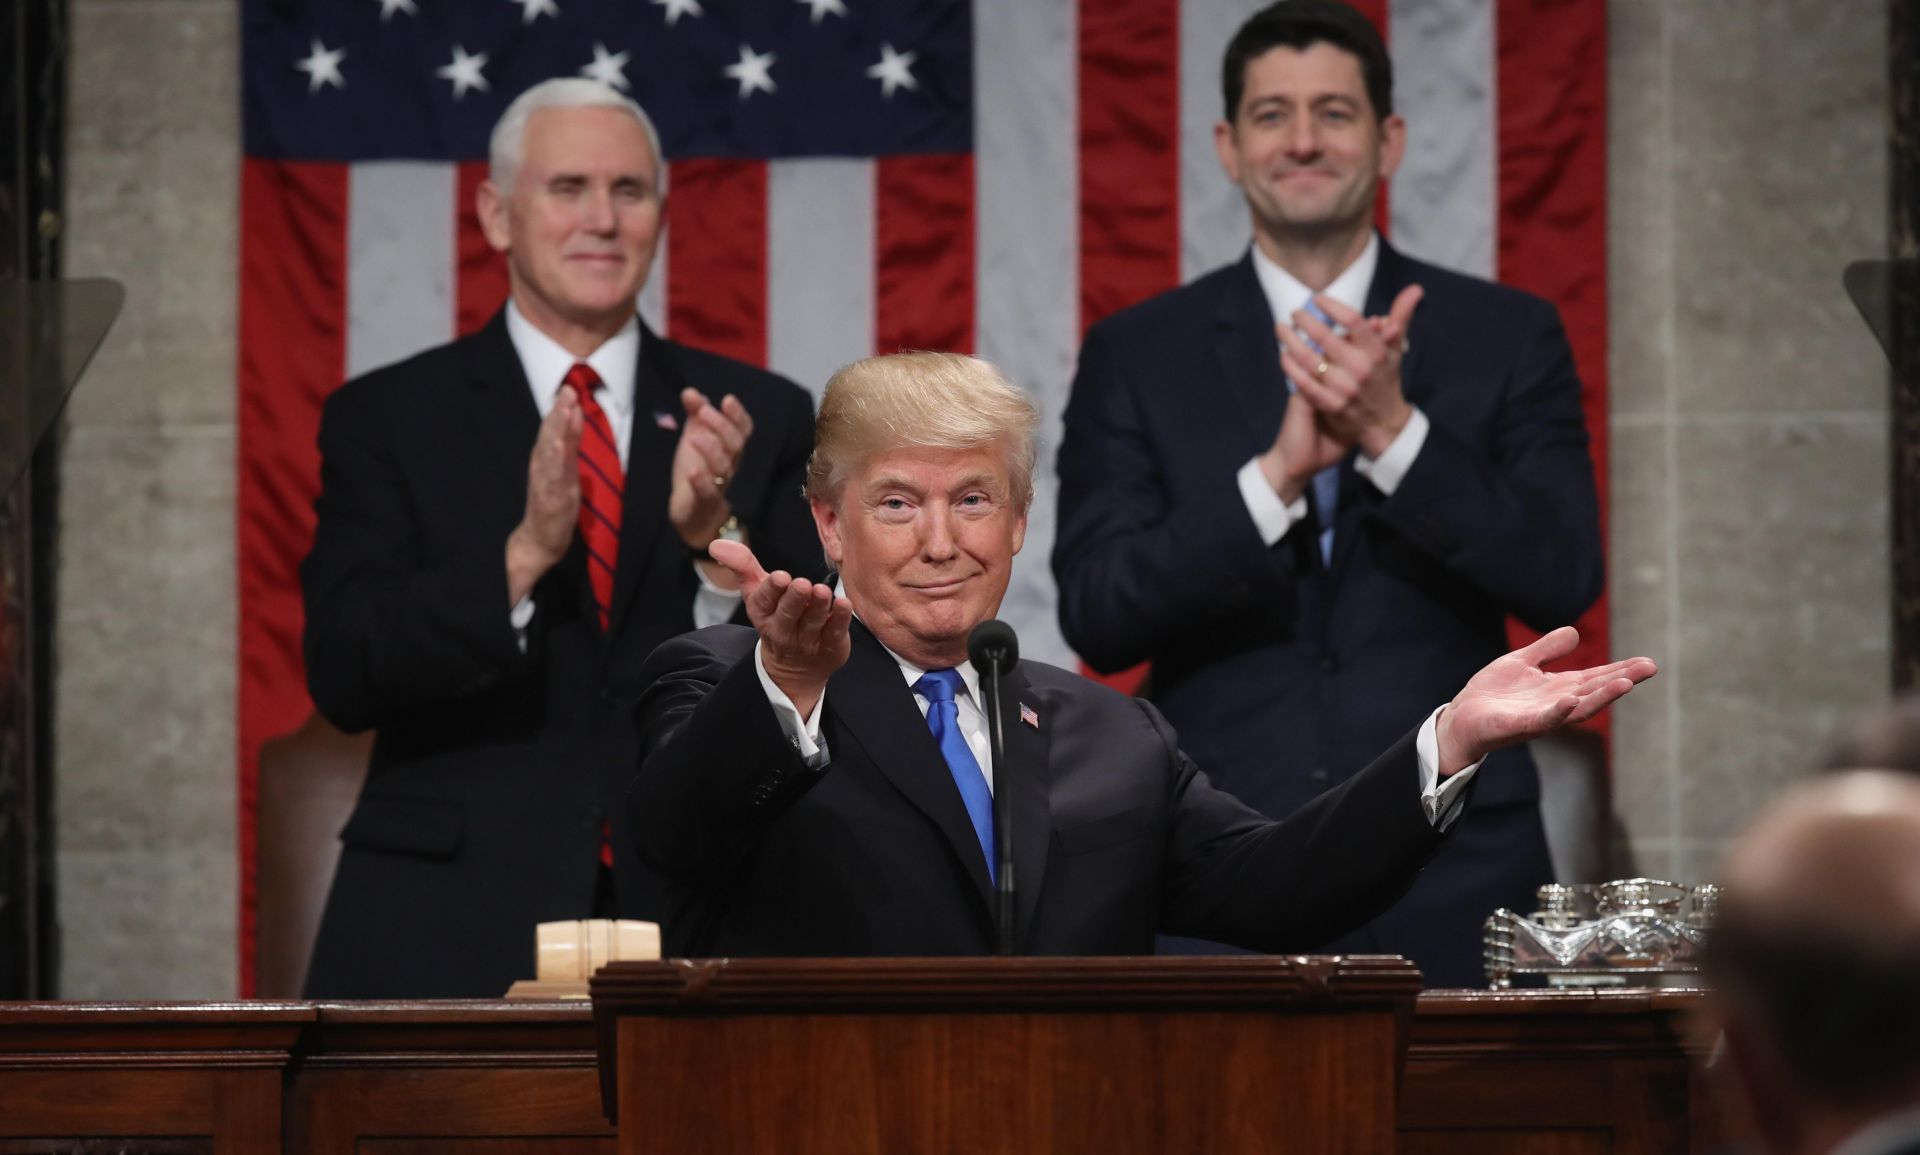 El presidente estadounidense Donald Trump (c) pronuncia hoy, martes 30 de enero de 2018, su discurso sobre el Estado de la Unión ante el Congreso, acompañado por el vicepresidente Mike Pence (i) y el presidente de la Cámara de Representantes Paul Ryan (d), en Washington (Estados Unidos). 